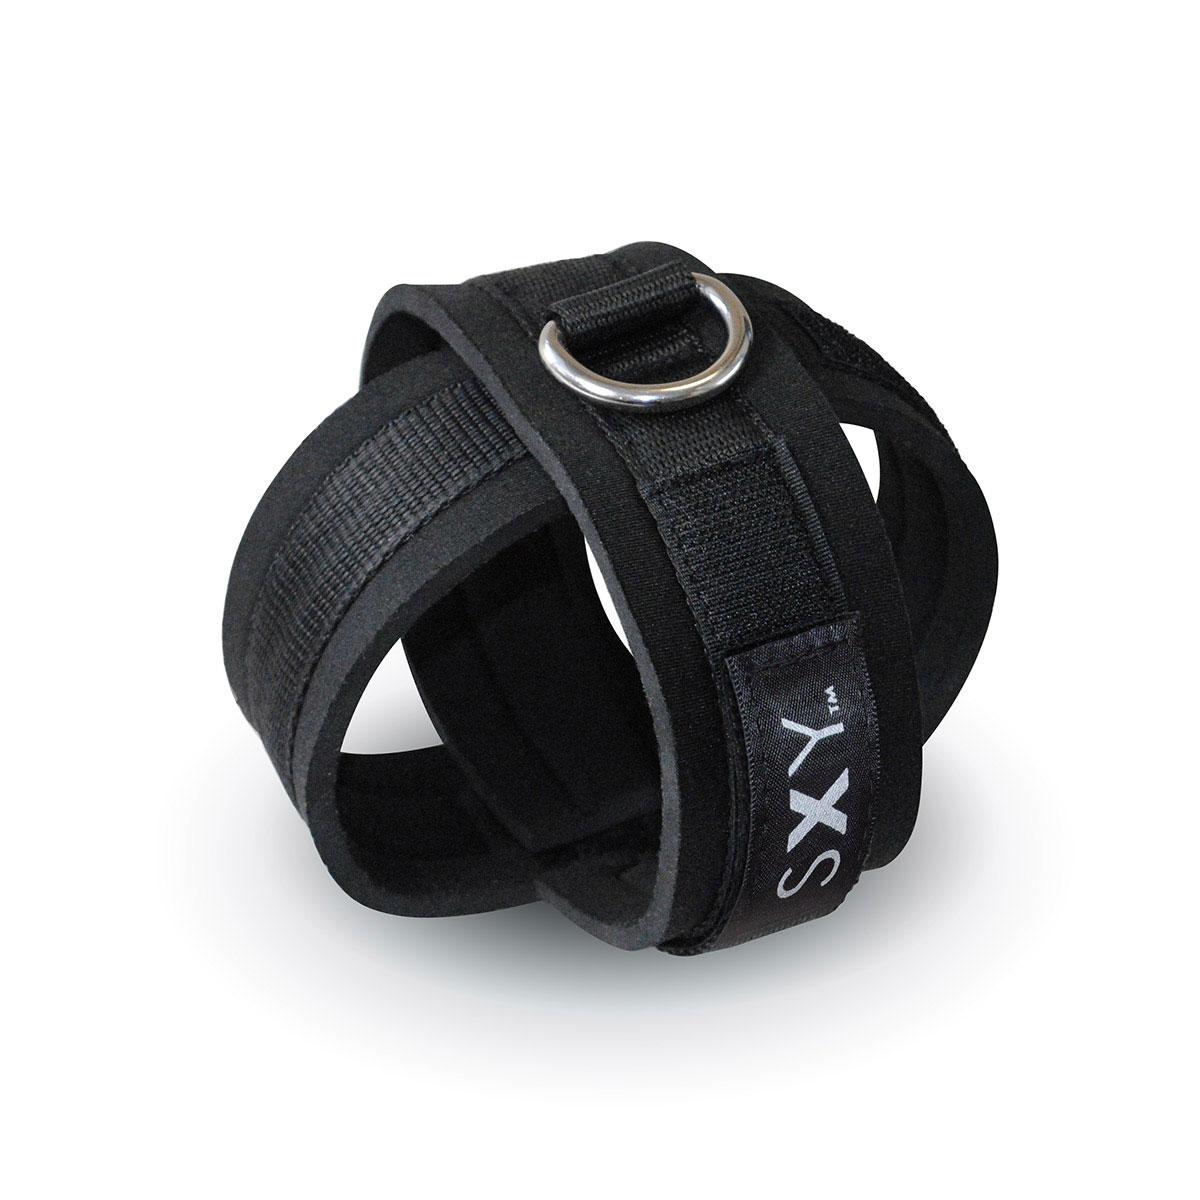 SXY Neoprene Cross Cuffs